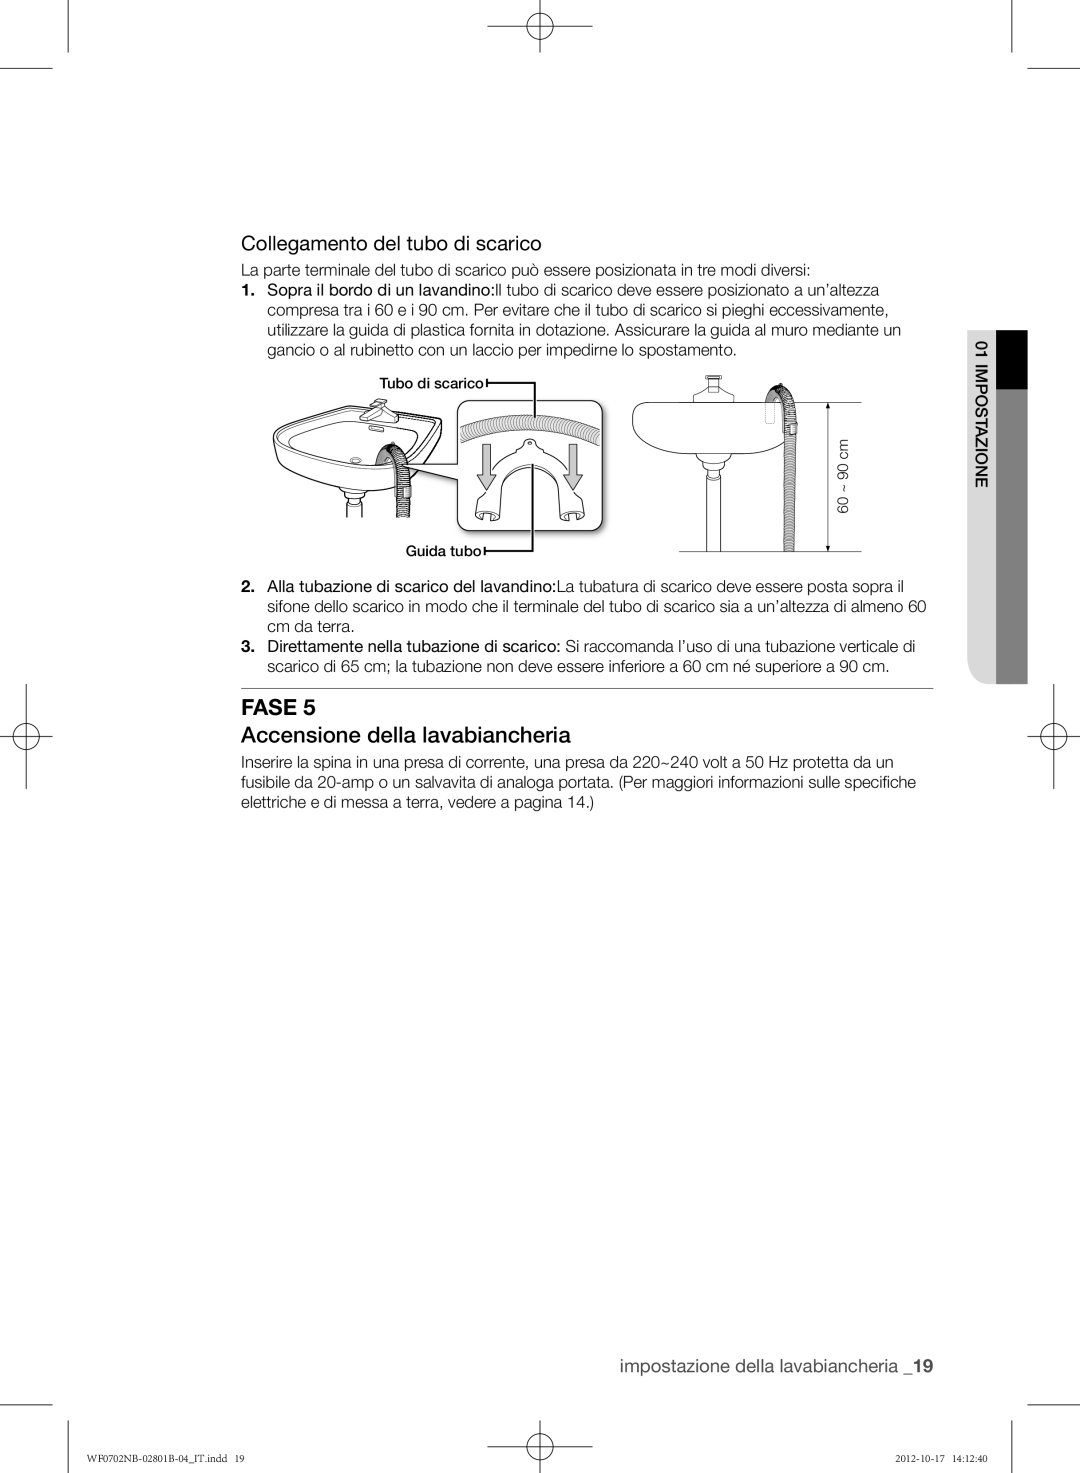 Samsung WF0700NBE/XET, WF0702NCE/XET, WF0700NBW/XET Accensione della lavabiancheria, Collegamento del tubo di scarico, Fase 